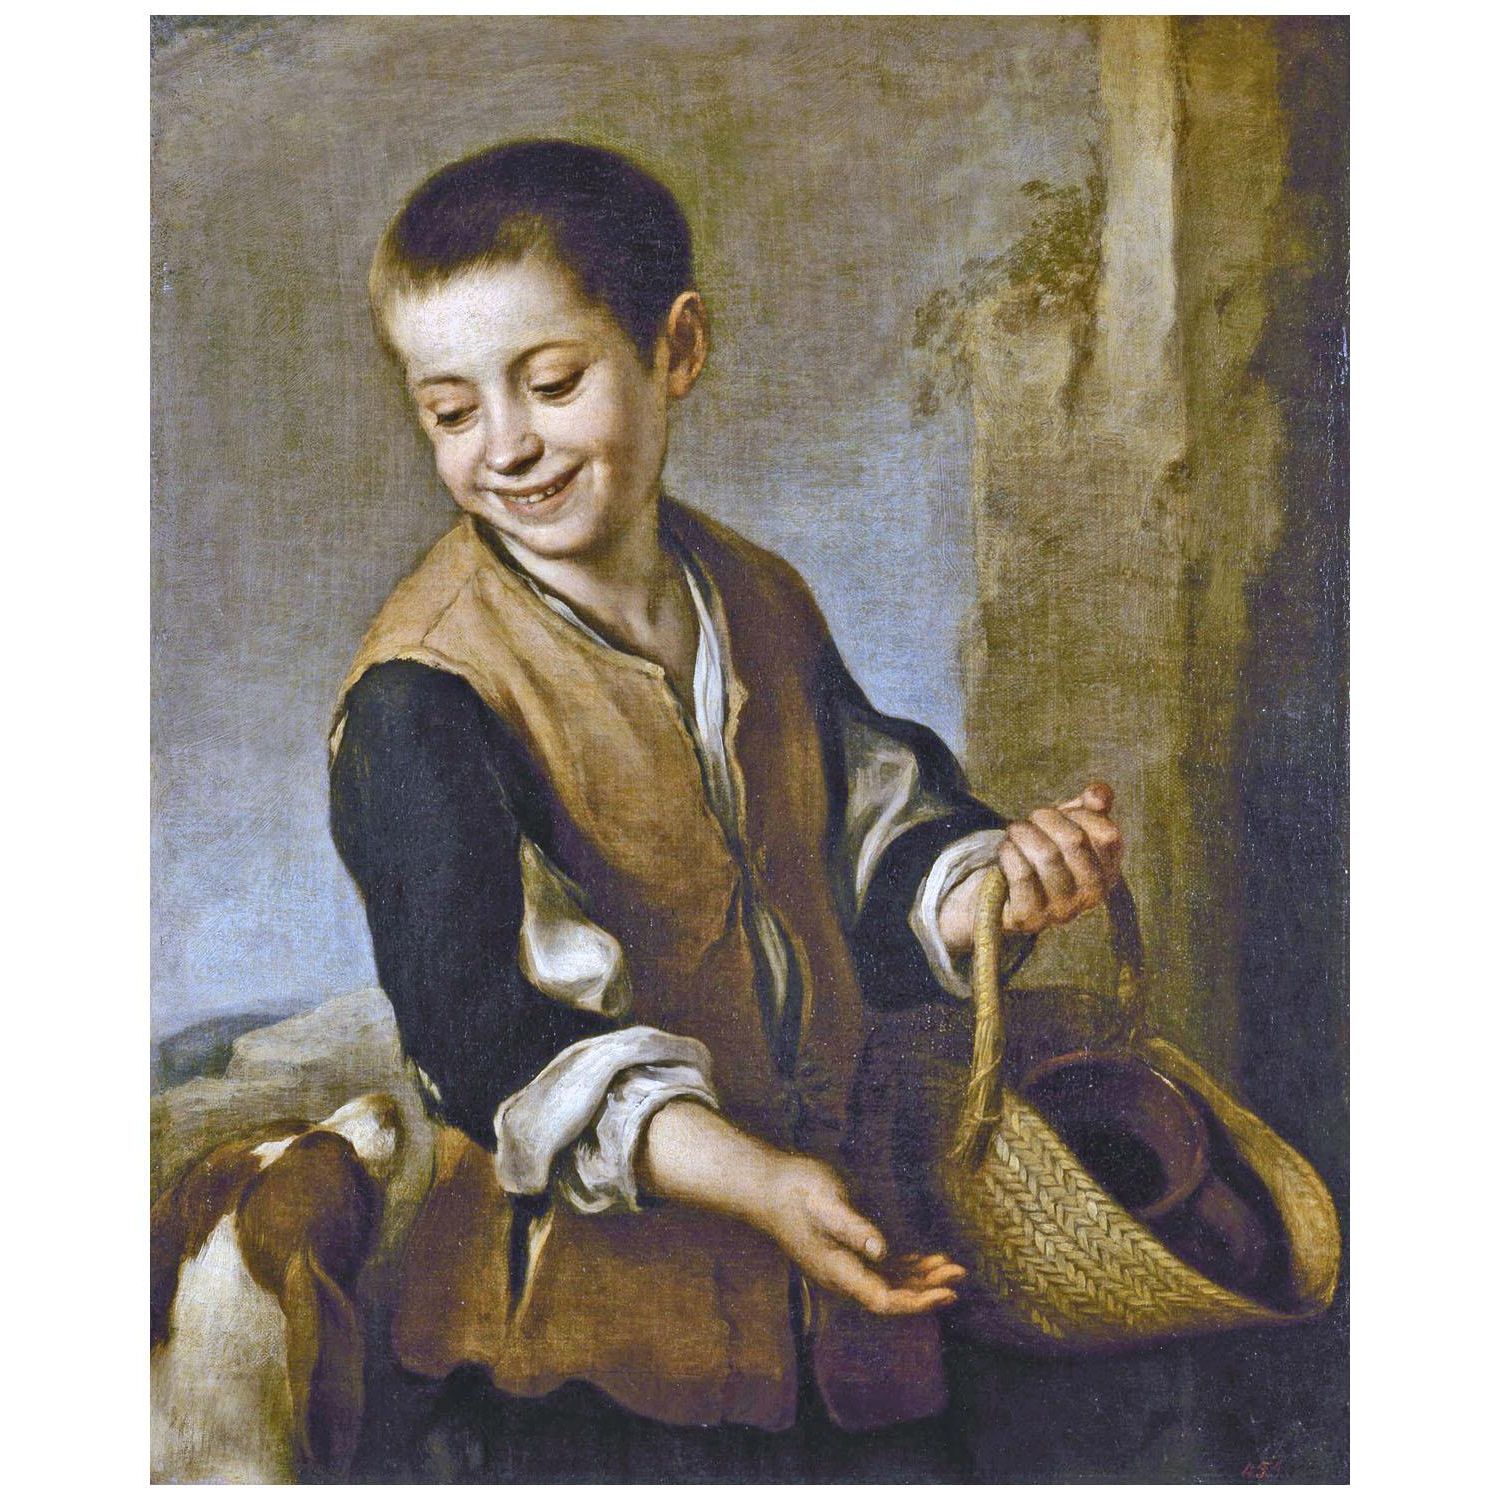 Bartolome Esteban Murillo. Niño y el perro. 1655. Hermitage Museum